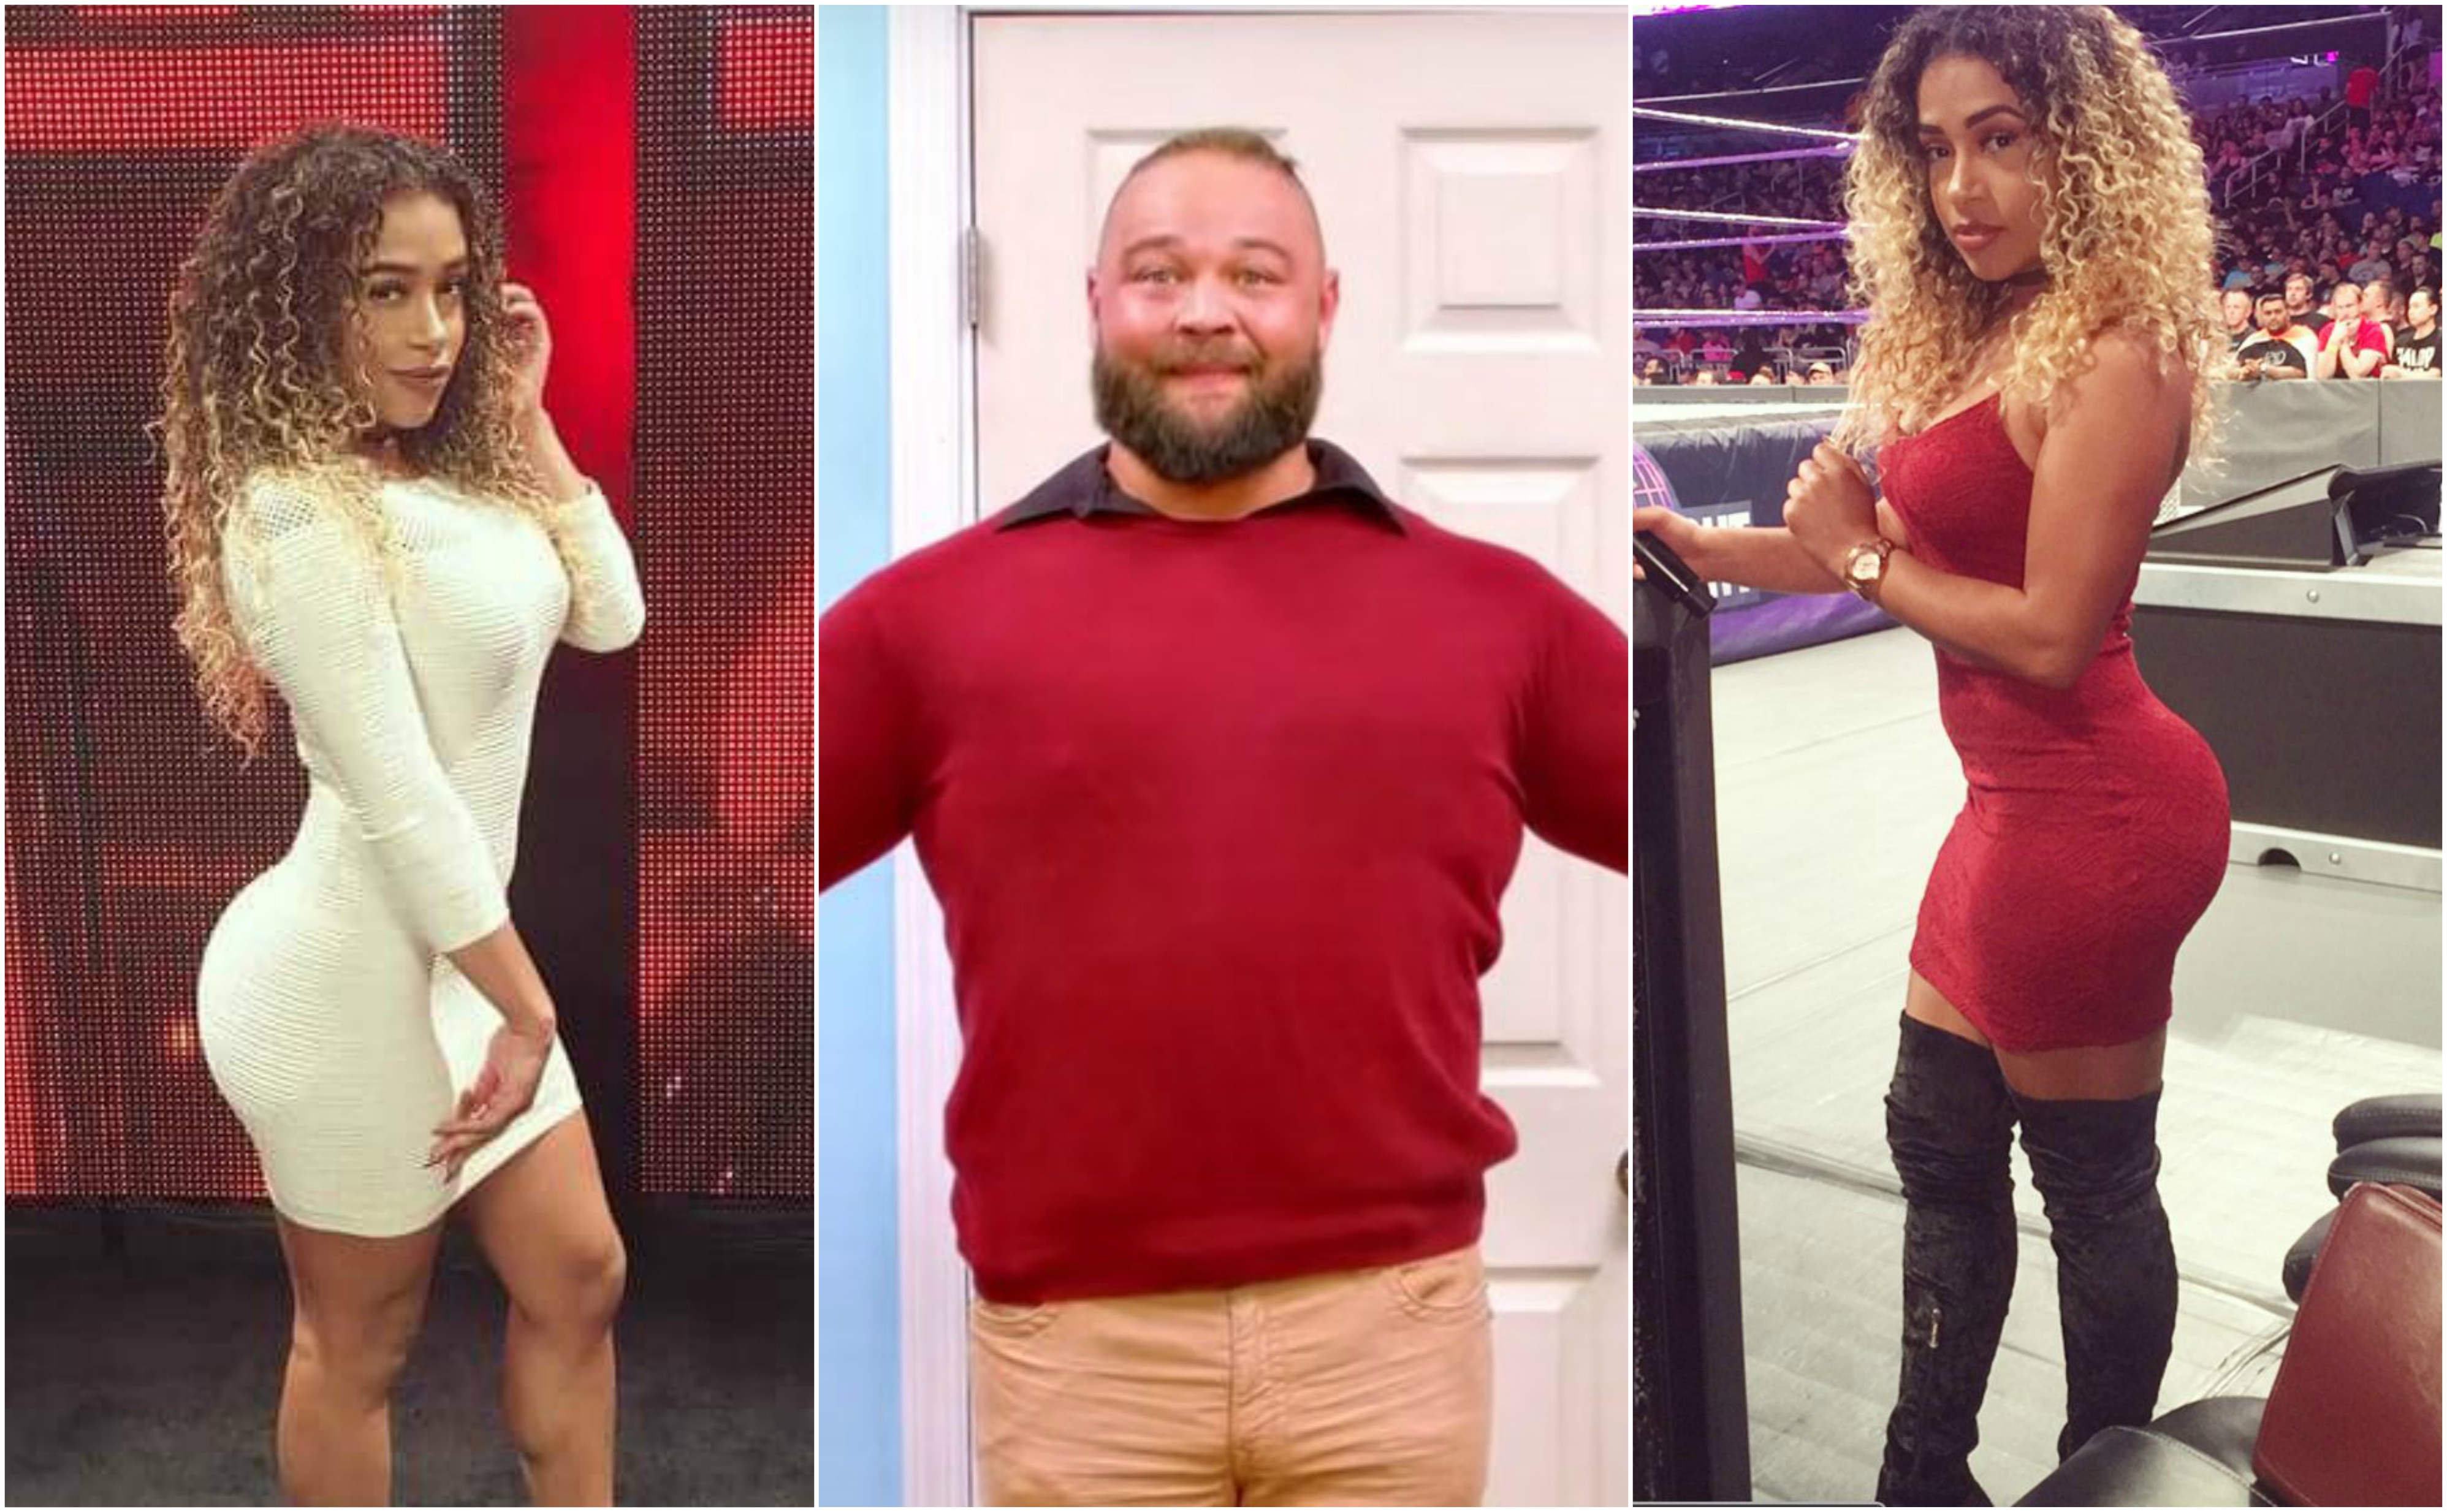 Bray Wyatt Returns To WWE After Leaving Wife & Getting JoJo Offerman Pr...